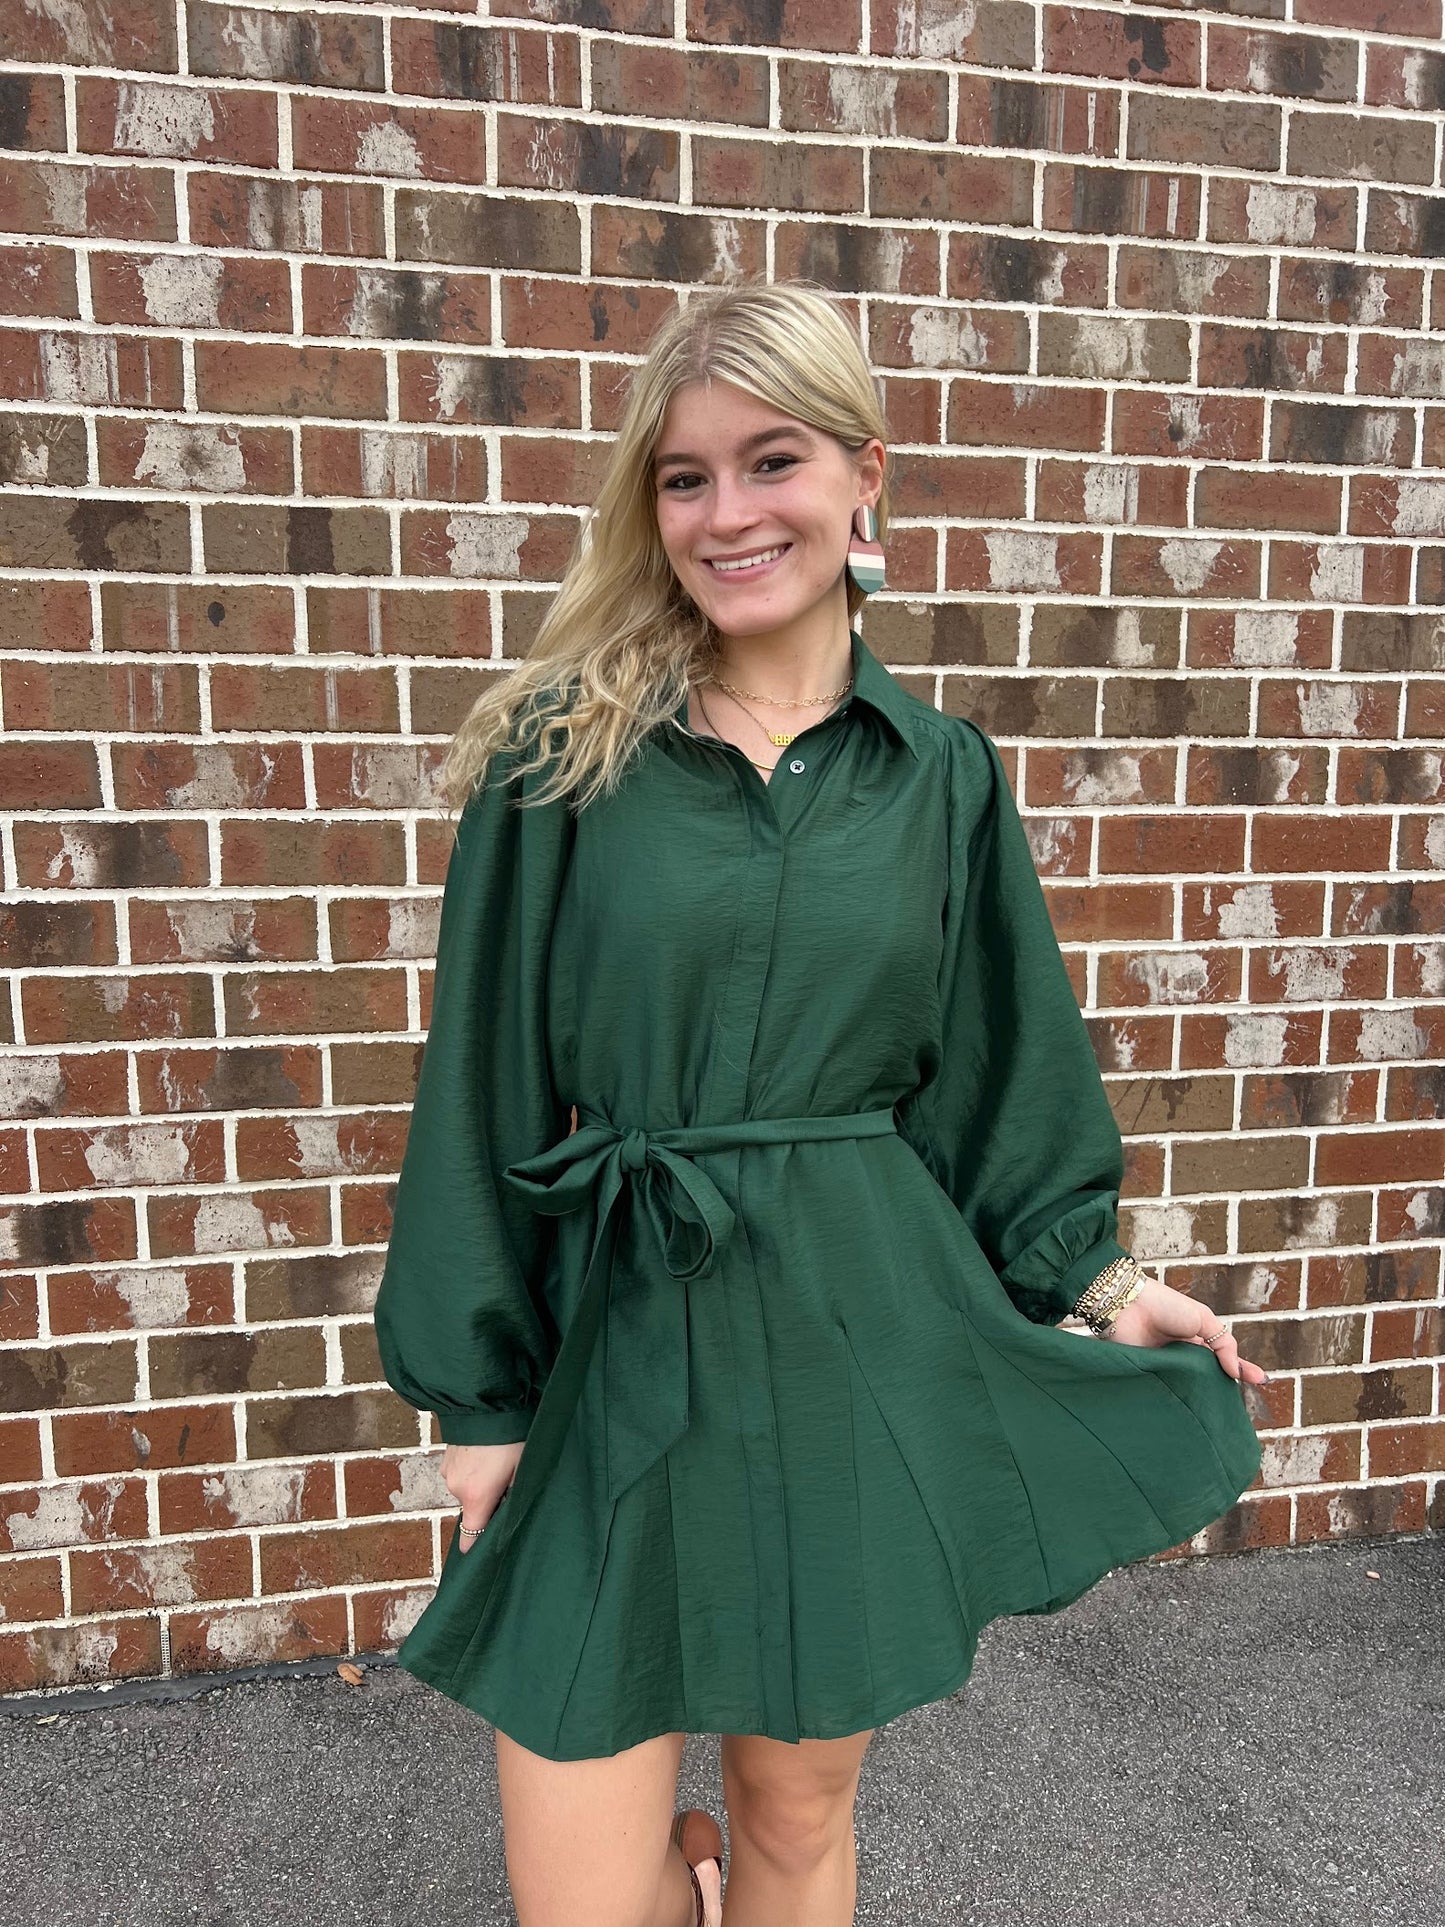 Jewel Green Pleats Dress Dresses in XS at Wrapsody